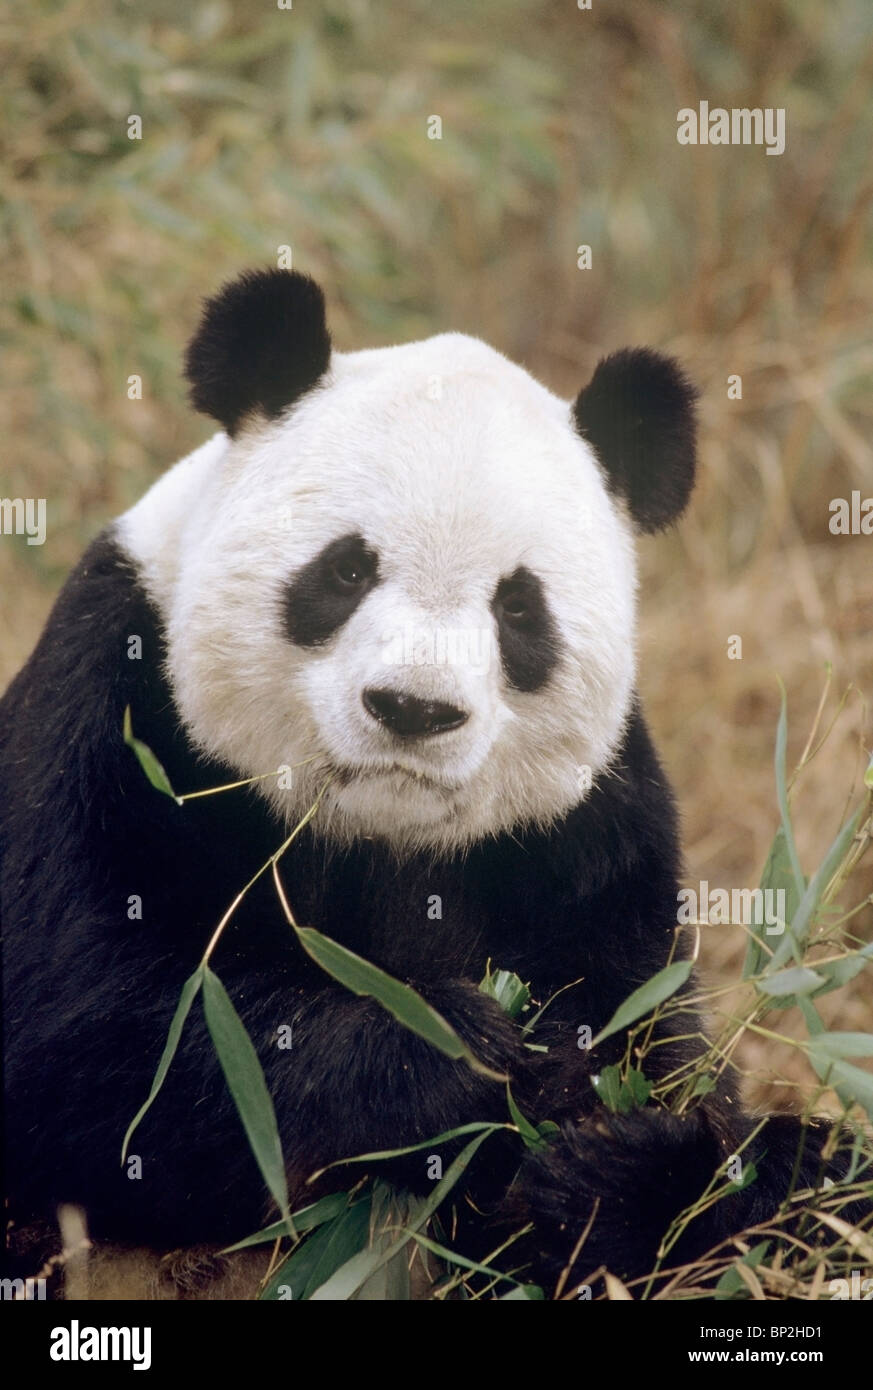 Giant panda feeding on bamboo, Wolong, China. Stock Photo